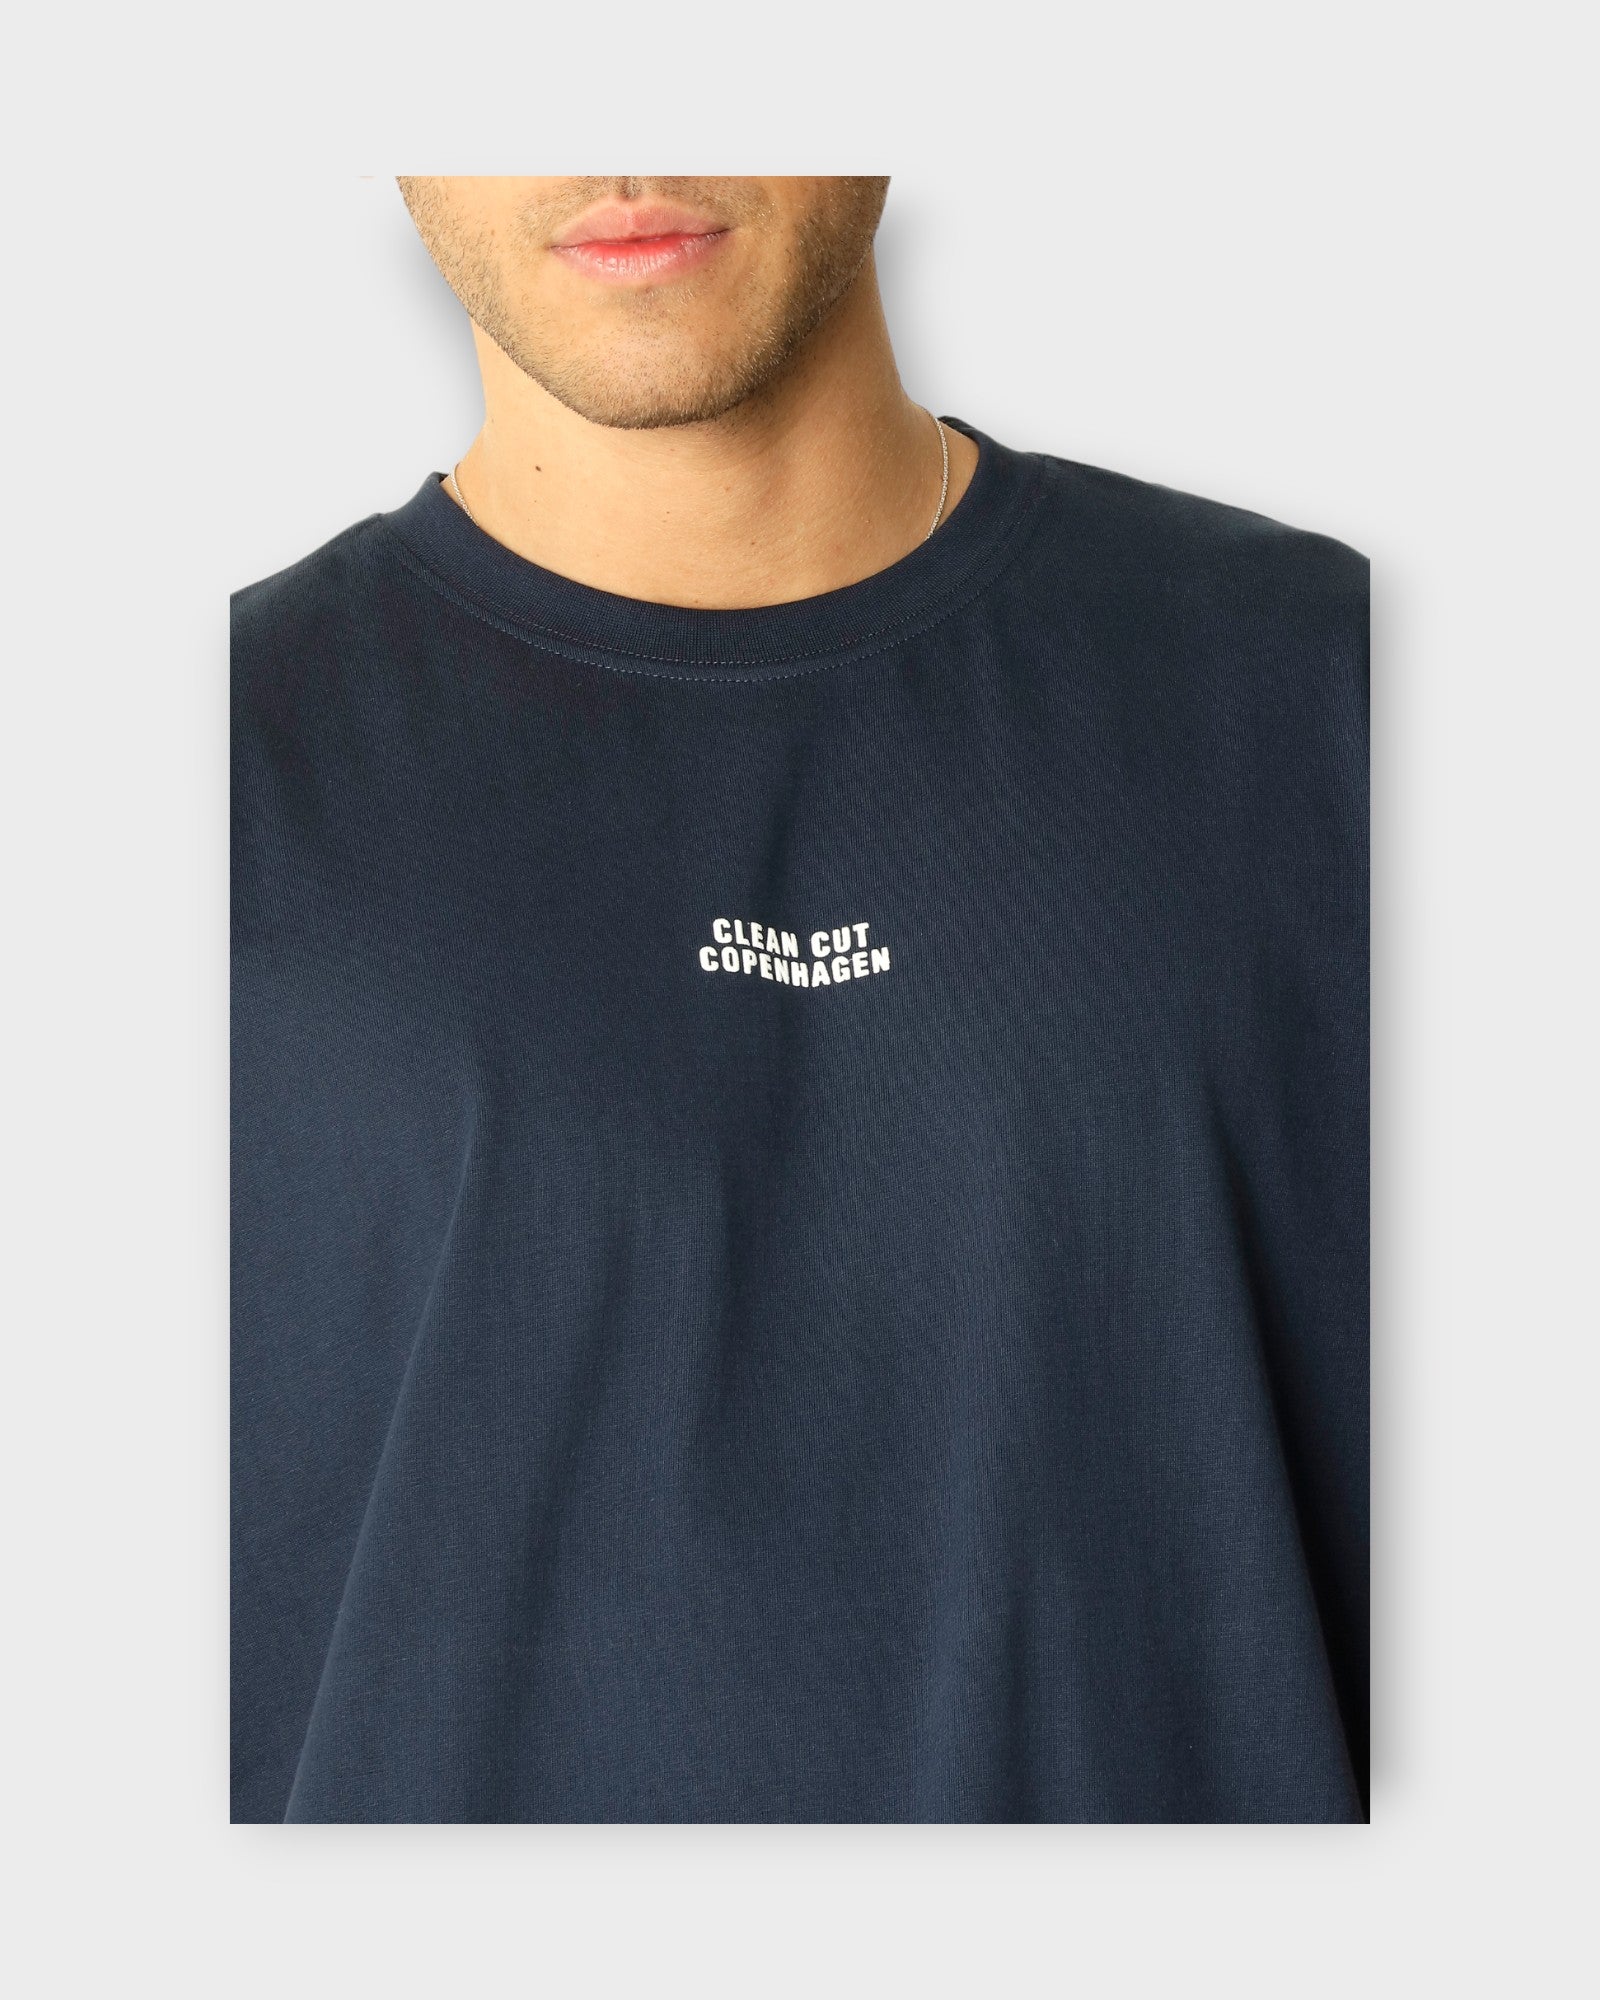 Cohen Organic Tee Navy fra Clean Cut Copenhagen. Mørkeblå T-shirt til mænd i regular fit. Her ses logoet i closeup.